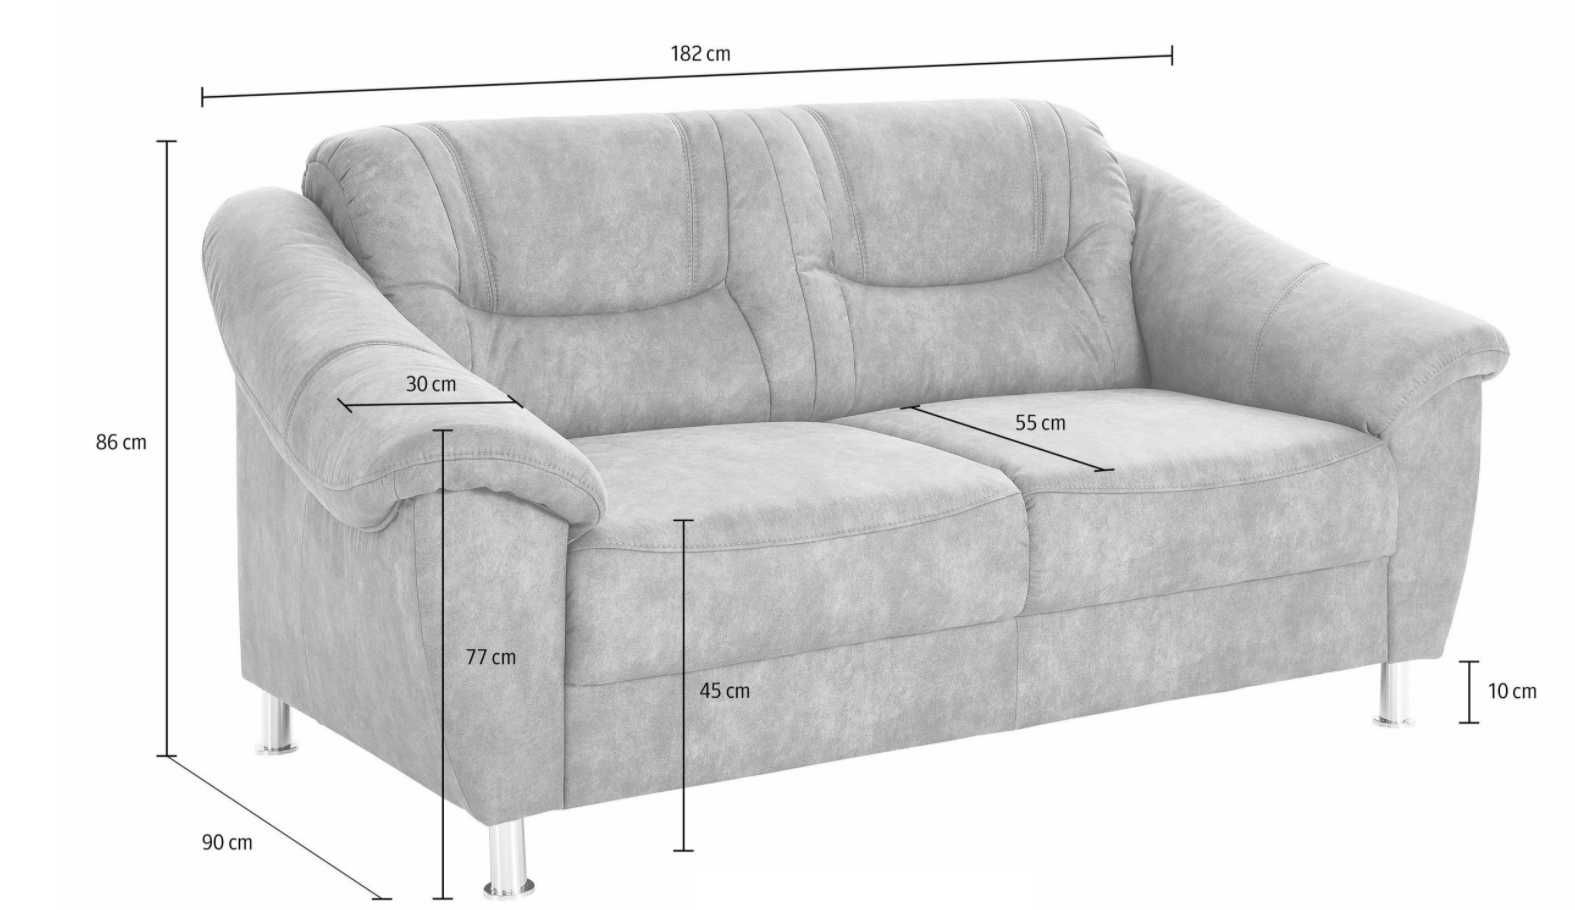 OKAZJA!Nowa kanapa dwuosobowa w kolorze oliwkowym. Wysoka jakość.